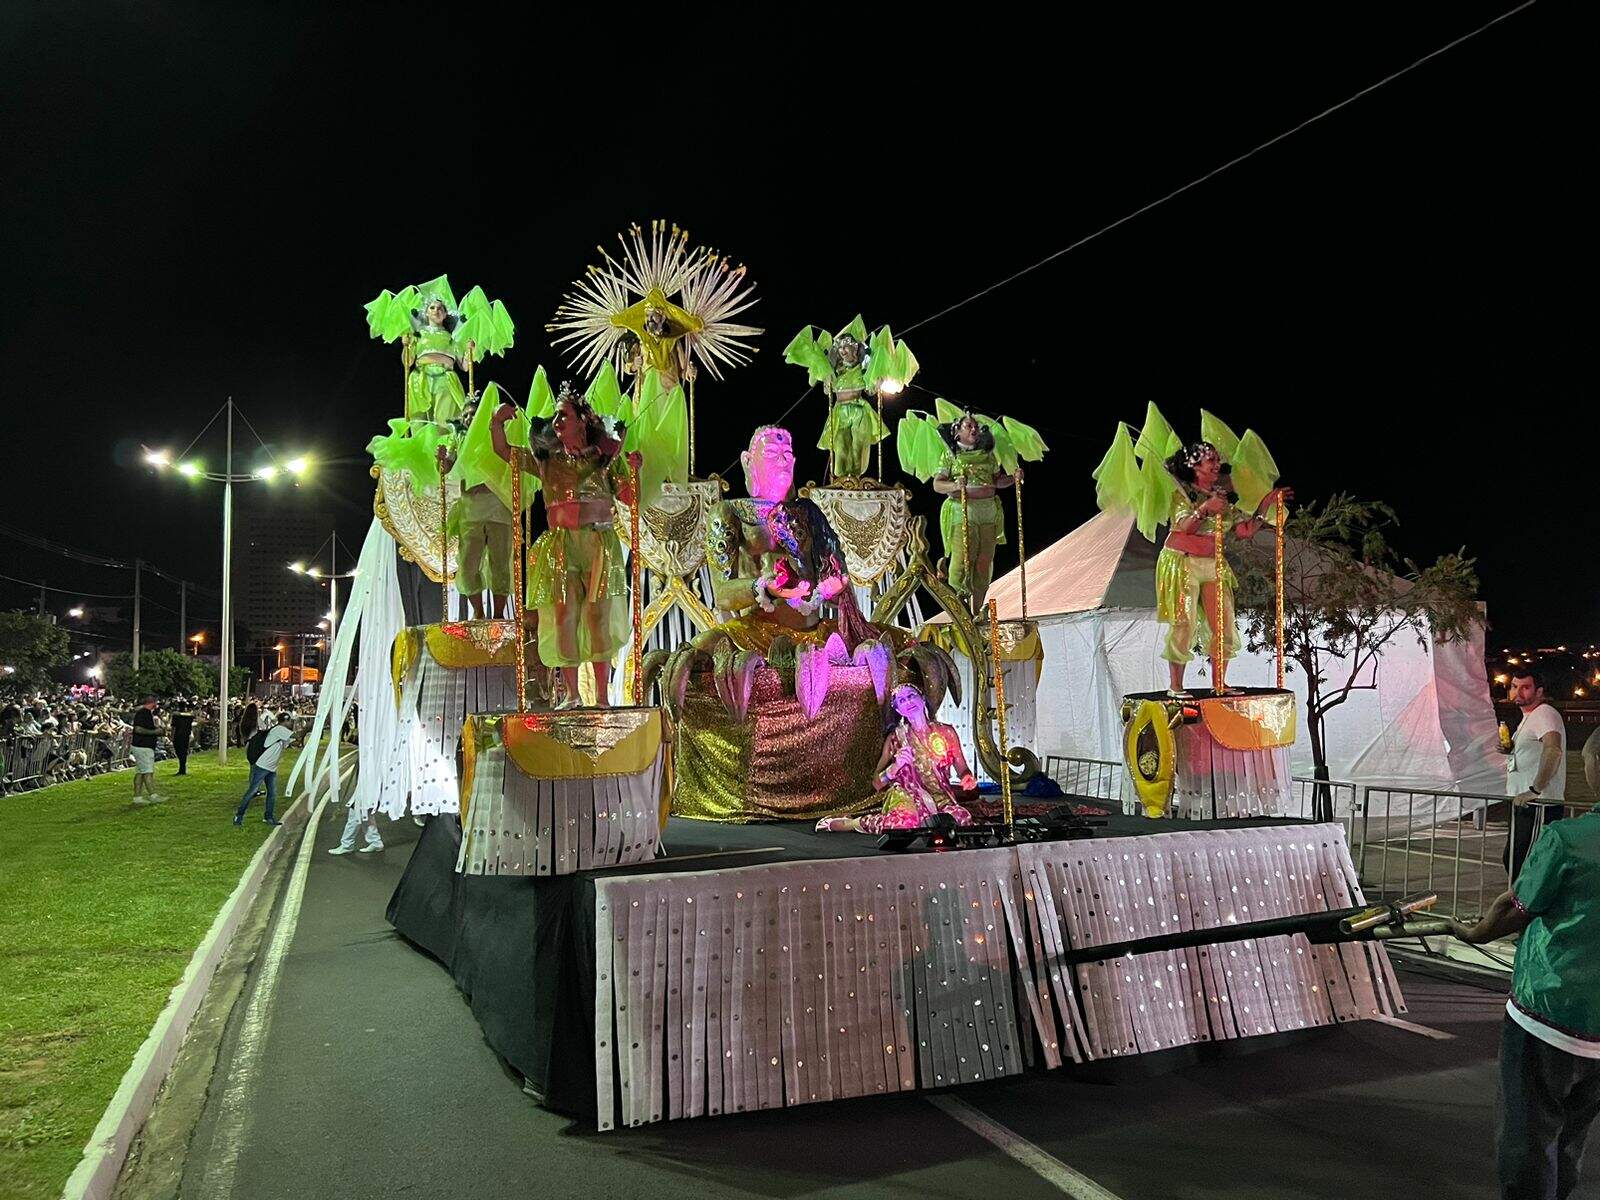 Com carros alegóricos altos e coloridos, Escola de Samba Coroa Imperial desfila na avenida Jorge Zaiden. Foto: Laylla Paes